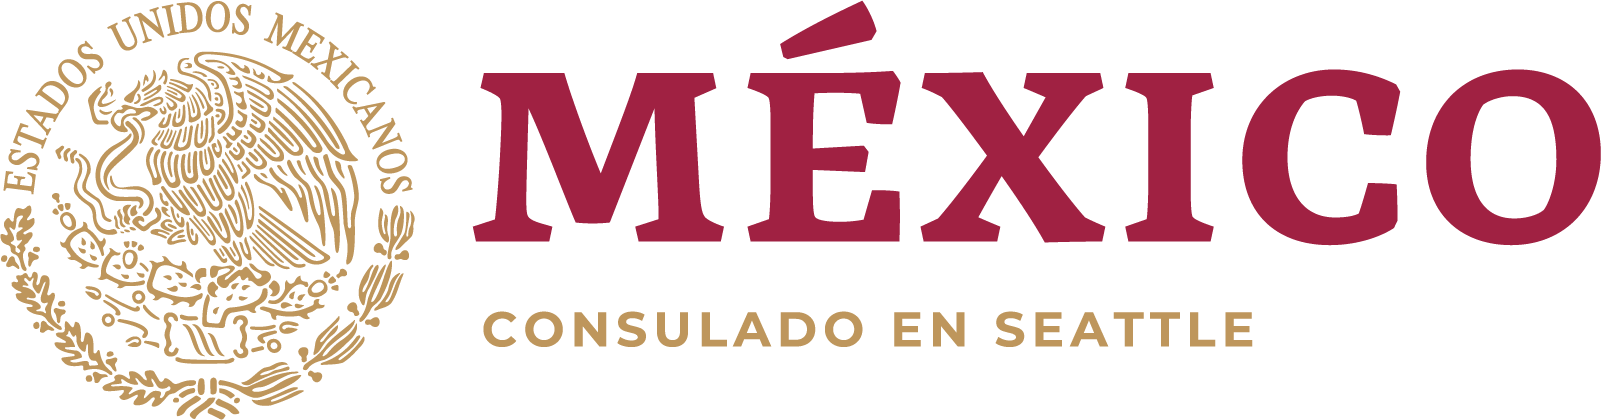 Consulado de Mexico en Seattle